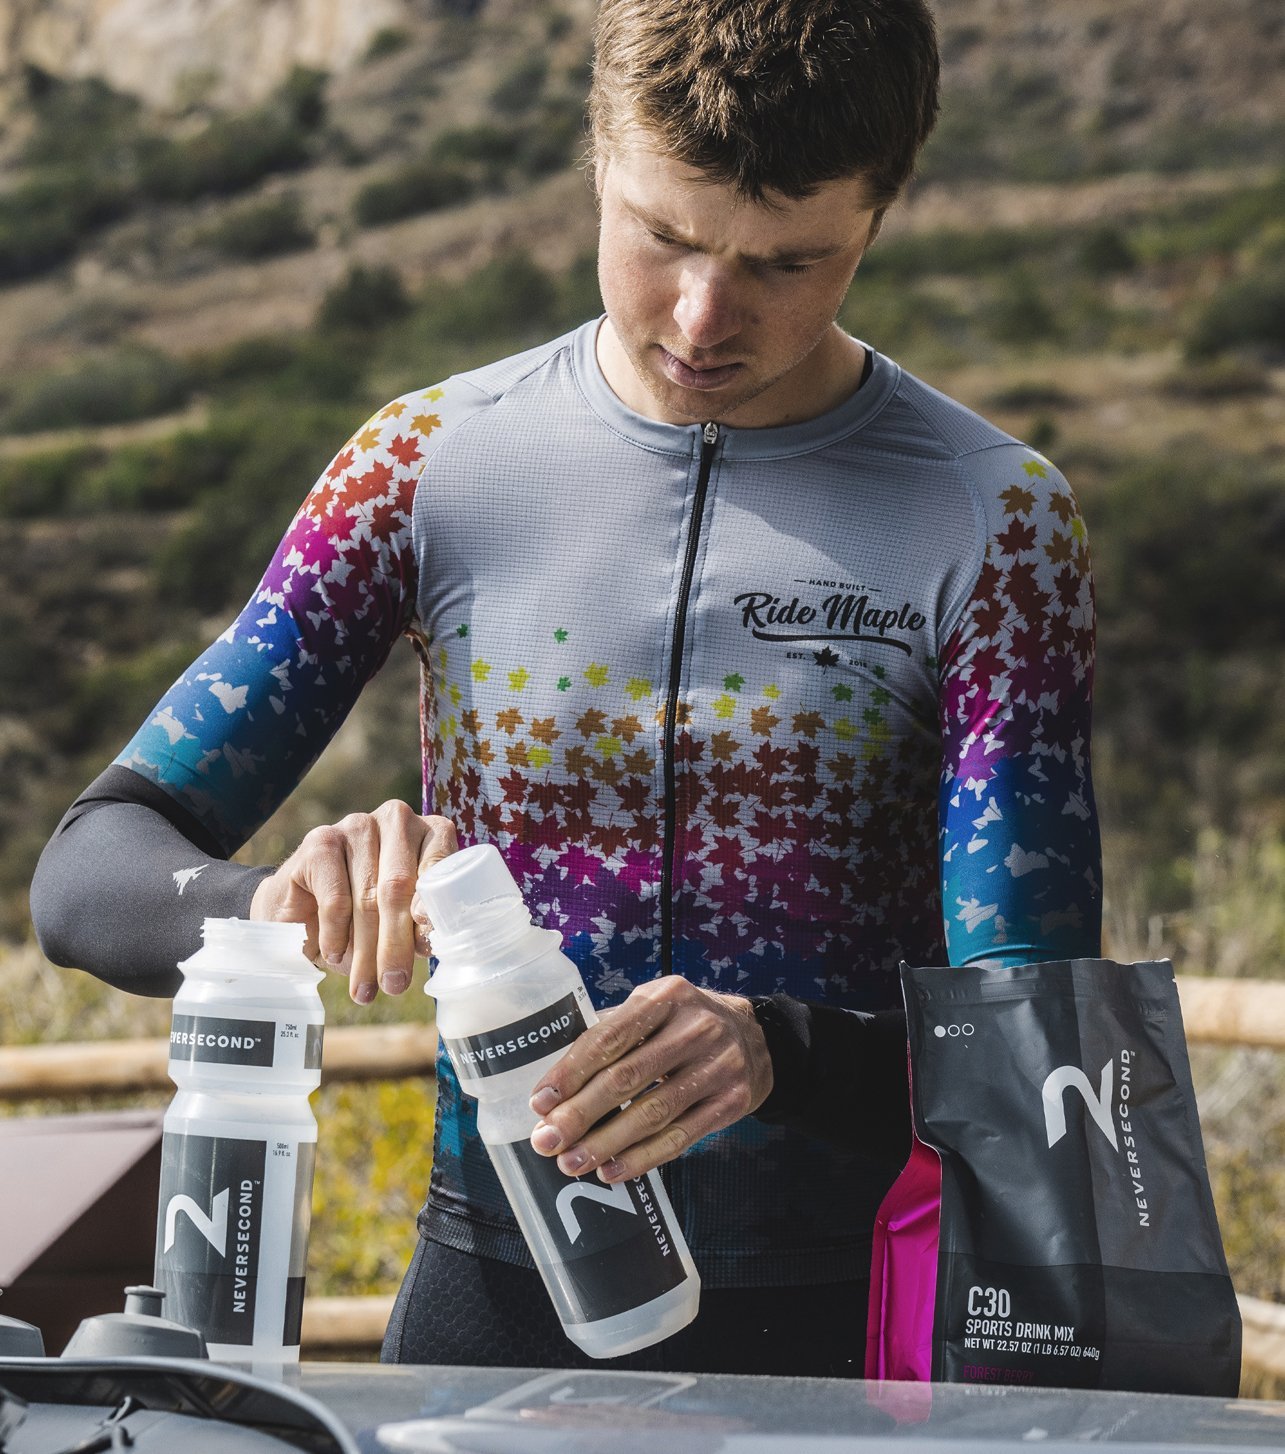 Radfahrer füllt Neversecond Energy Pulver in Trinkflaschen 